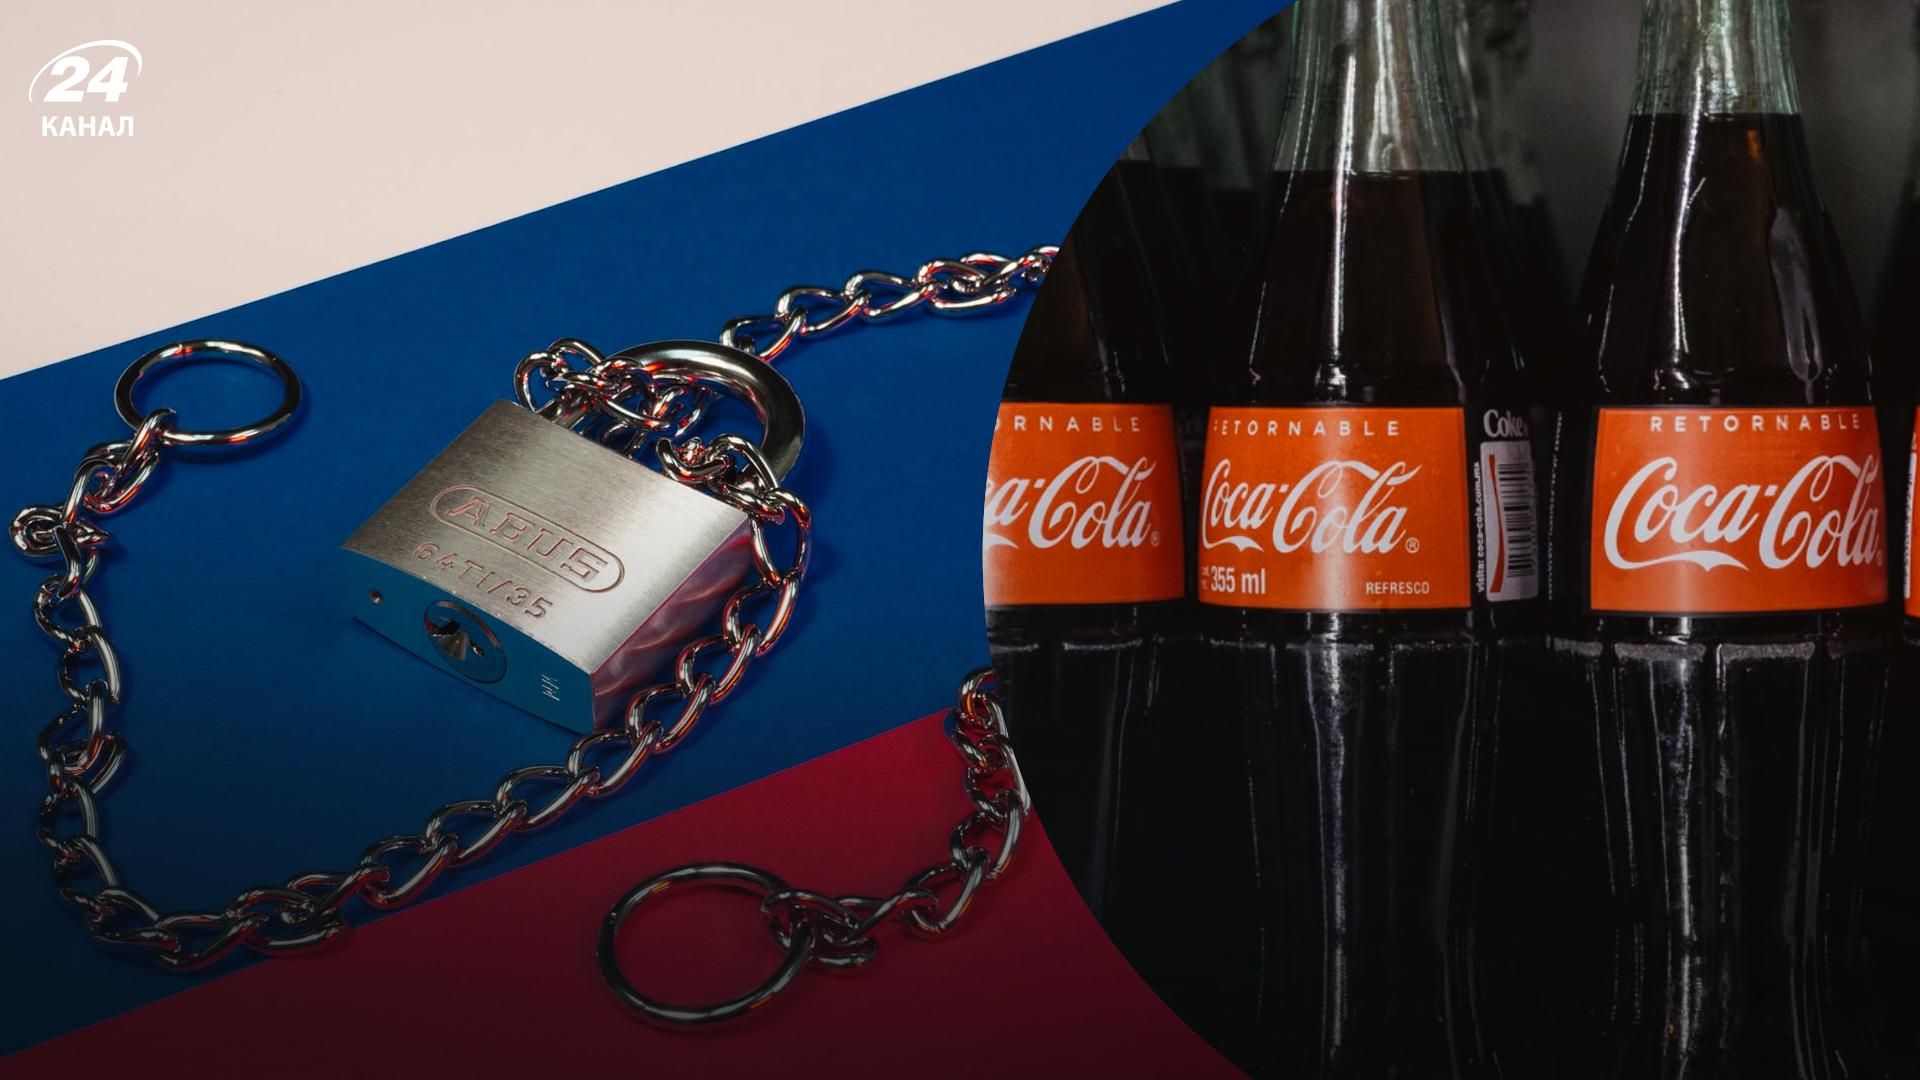 Байкал таки не тот: россияне собрались завозить Coca-Cola из-за границы